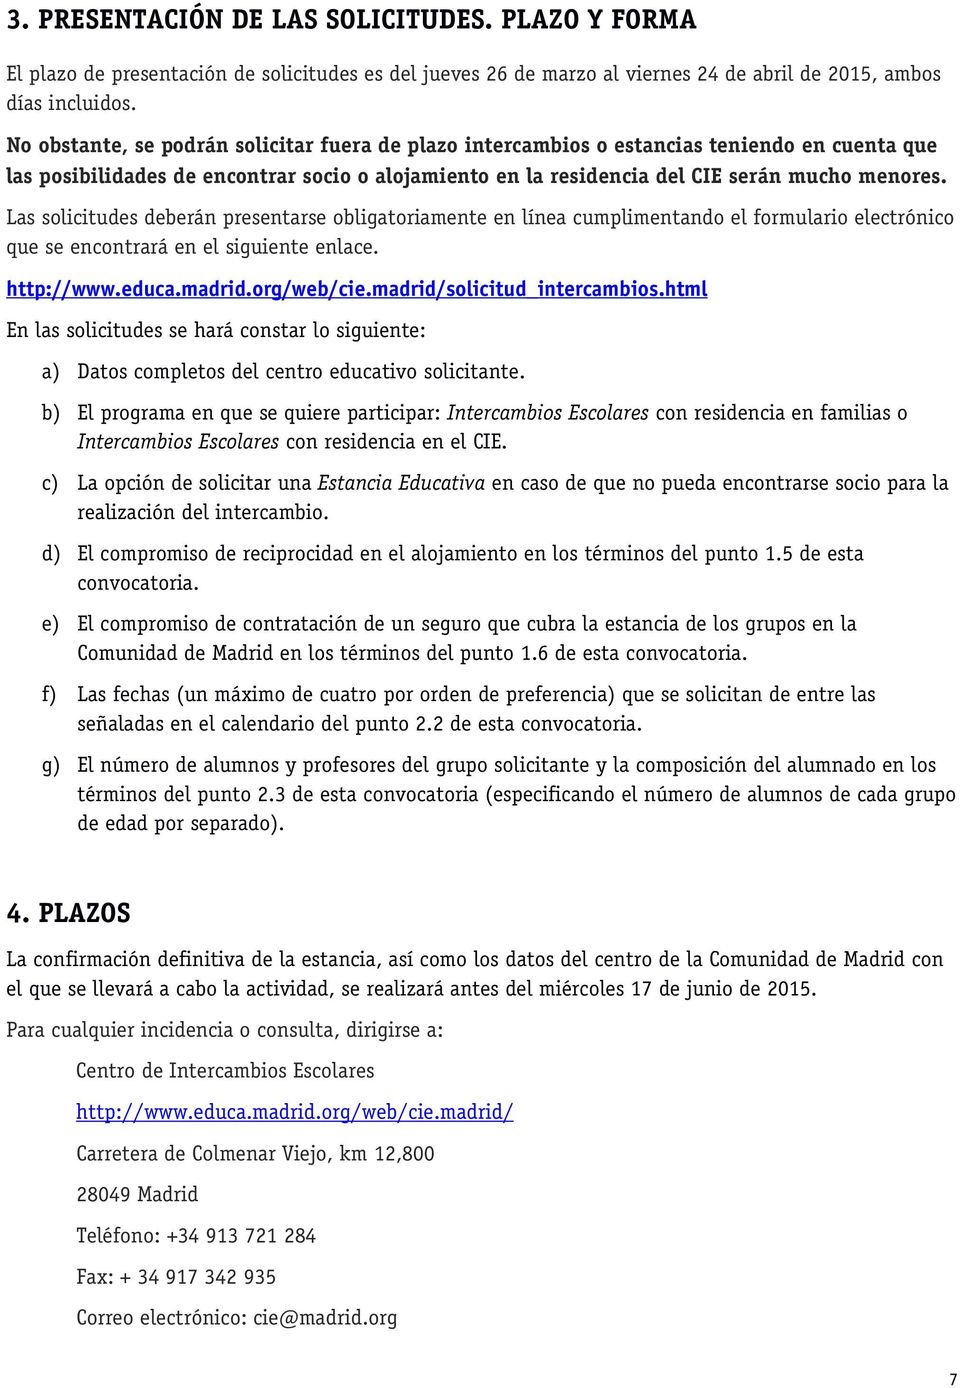 Las solicitudes deberán presentarse obligatoriamente en línea cumplimentando el formulario electrónico que se encontrará en el siguiente enlace. http://www.educa.madrid.org/web/cie.